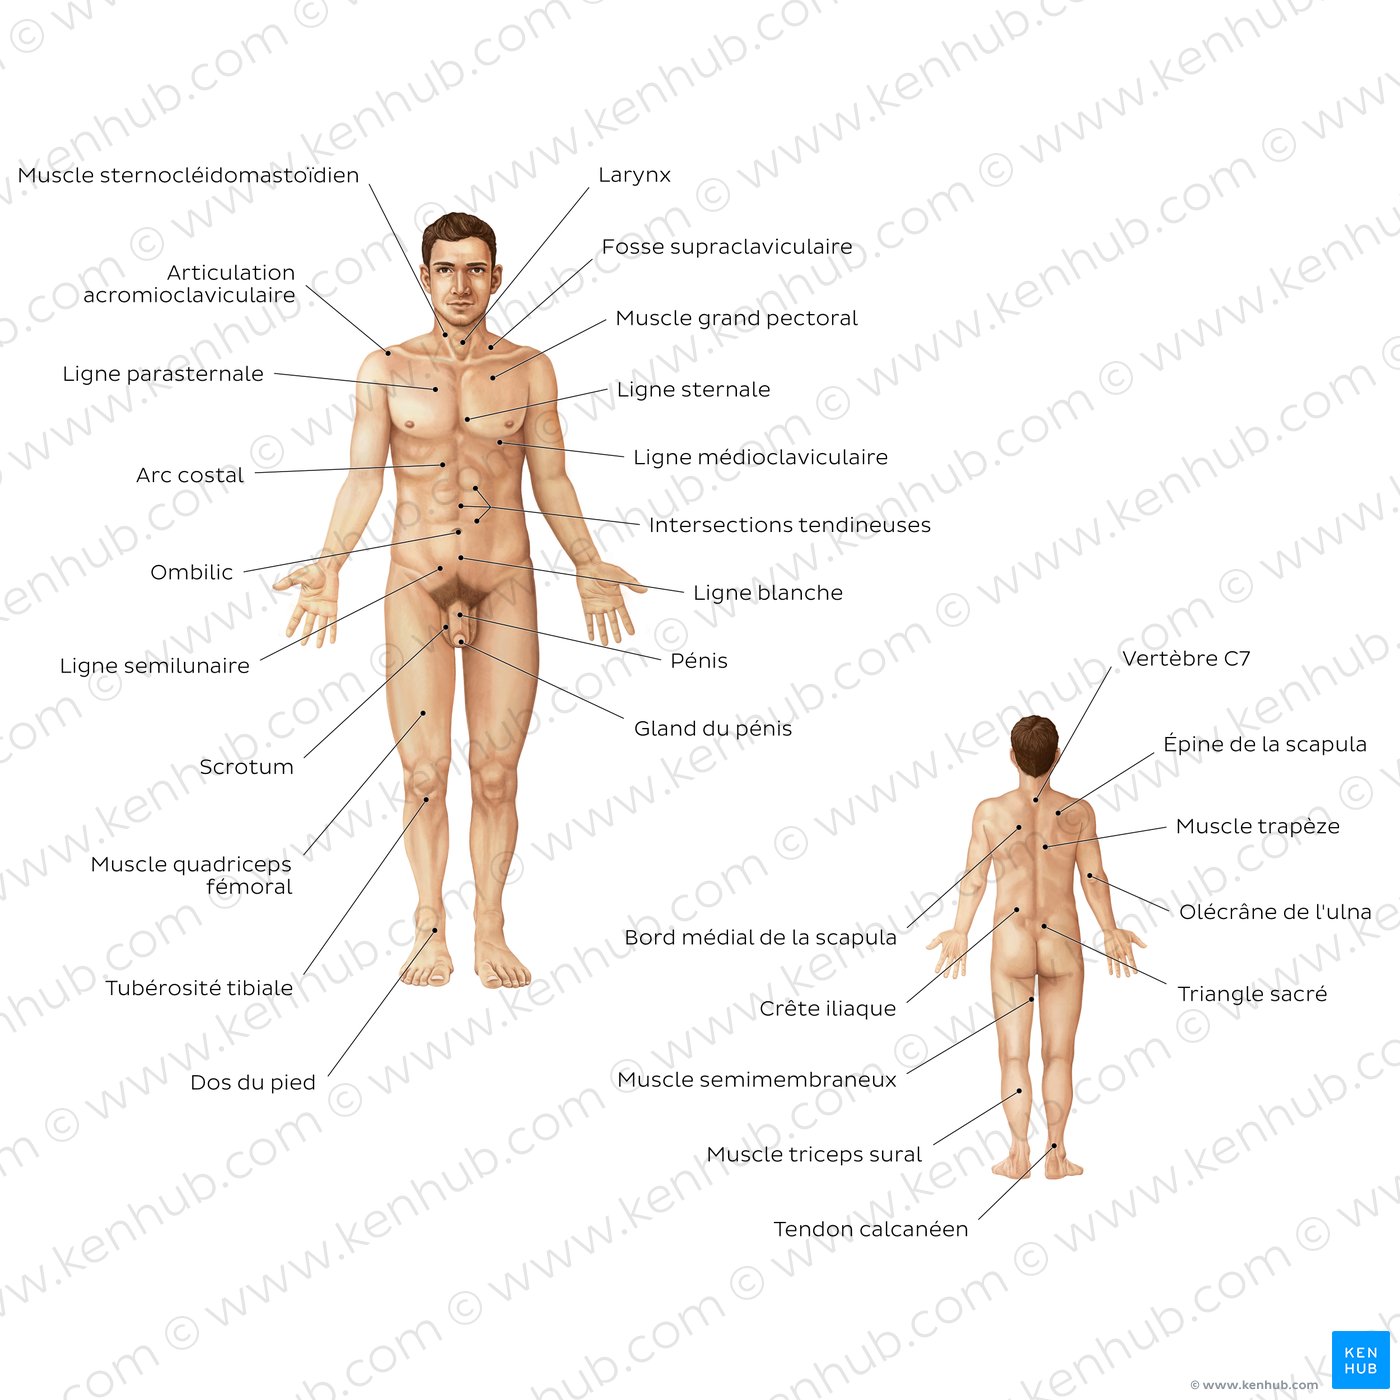 Anatomie de surface du corps masculin (vues antérieure et postérieure)